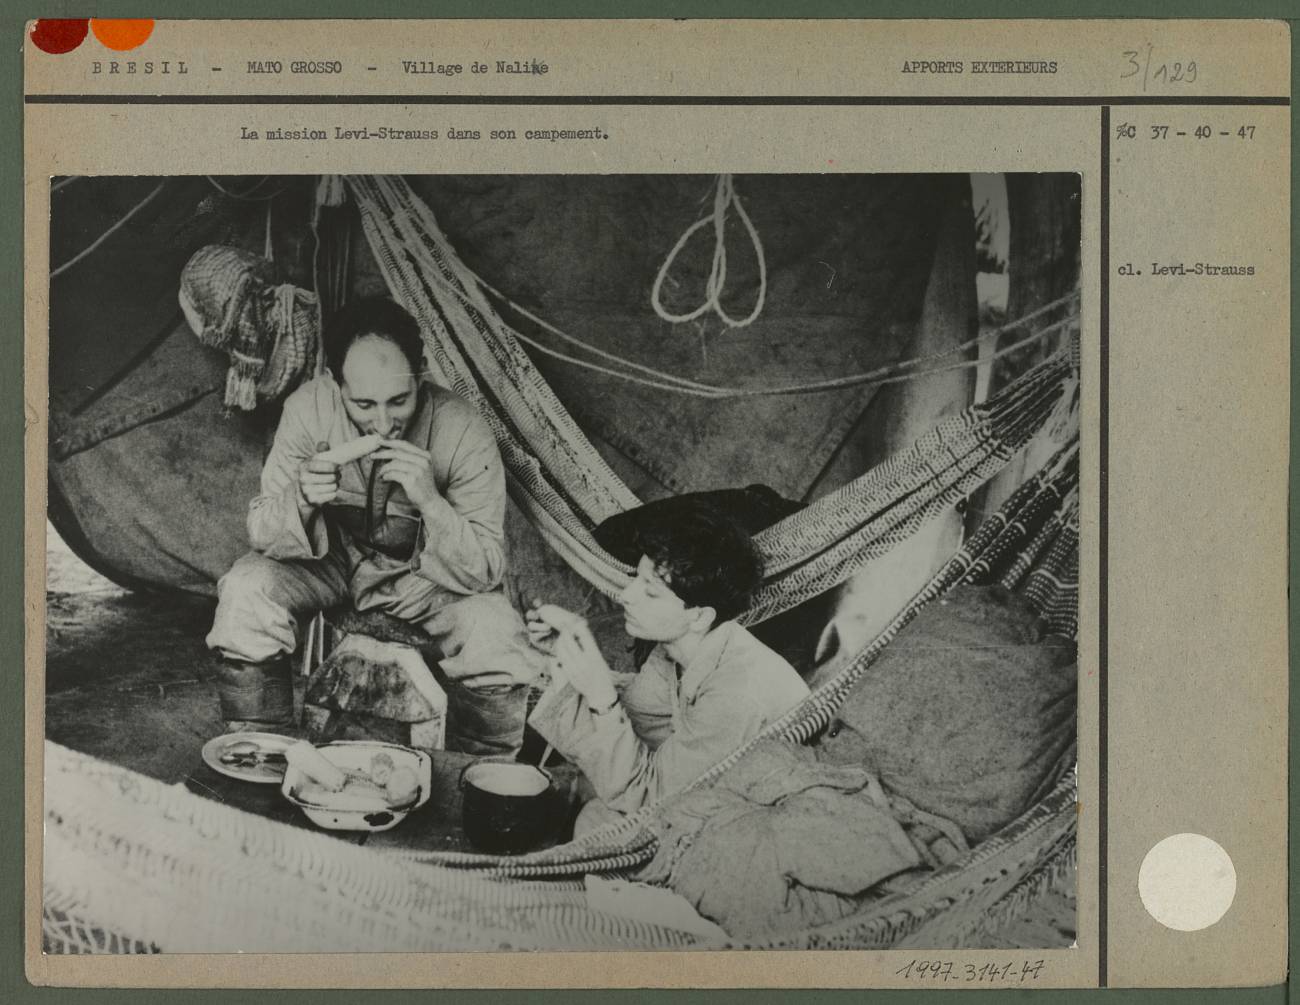 La misión de Lévi-Strauss en su campamento de Brasil.